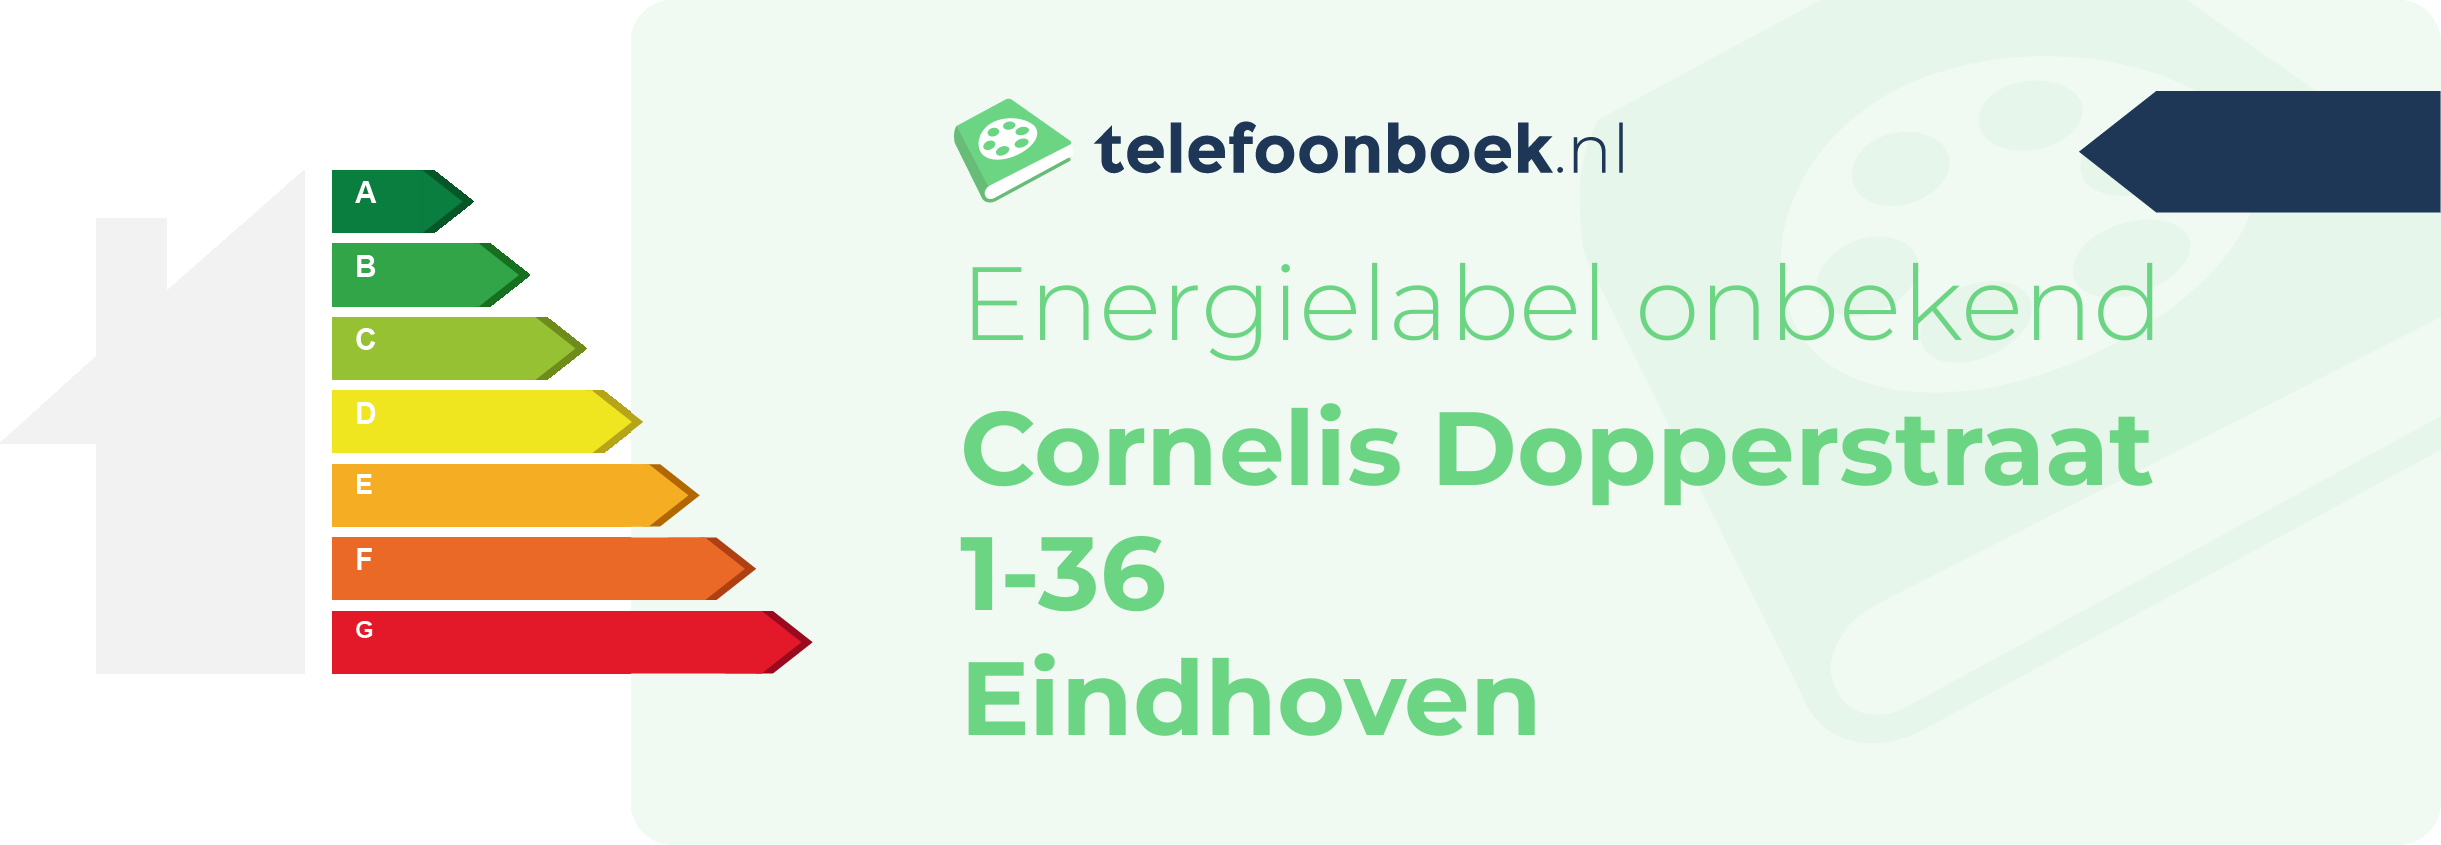 Energielabel Cornelis Dopperstraat 1-36 Eindhoven